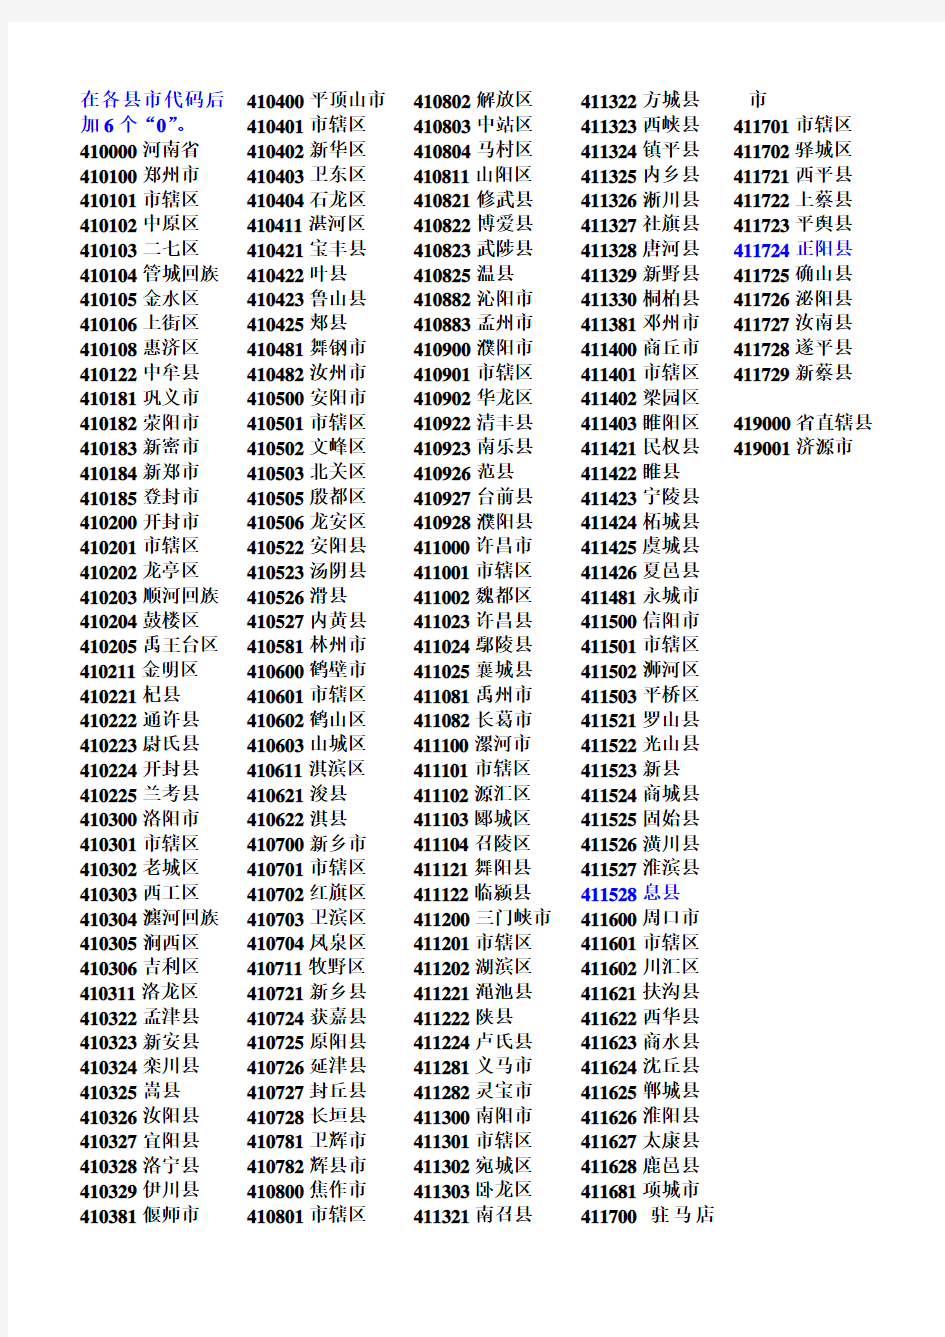 河南省行政区划代码